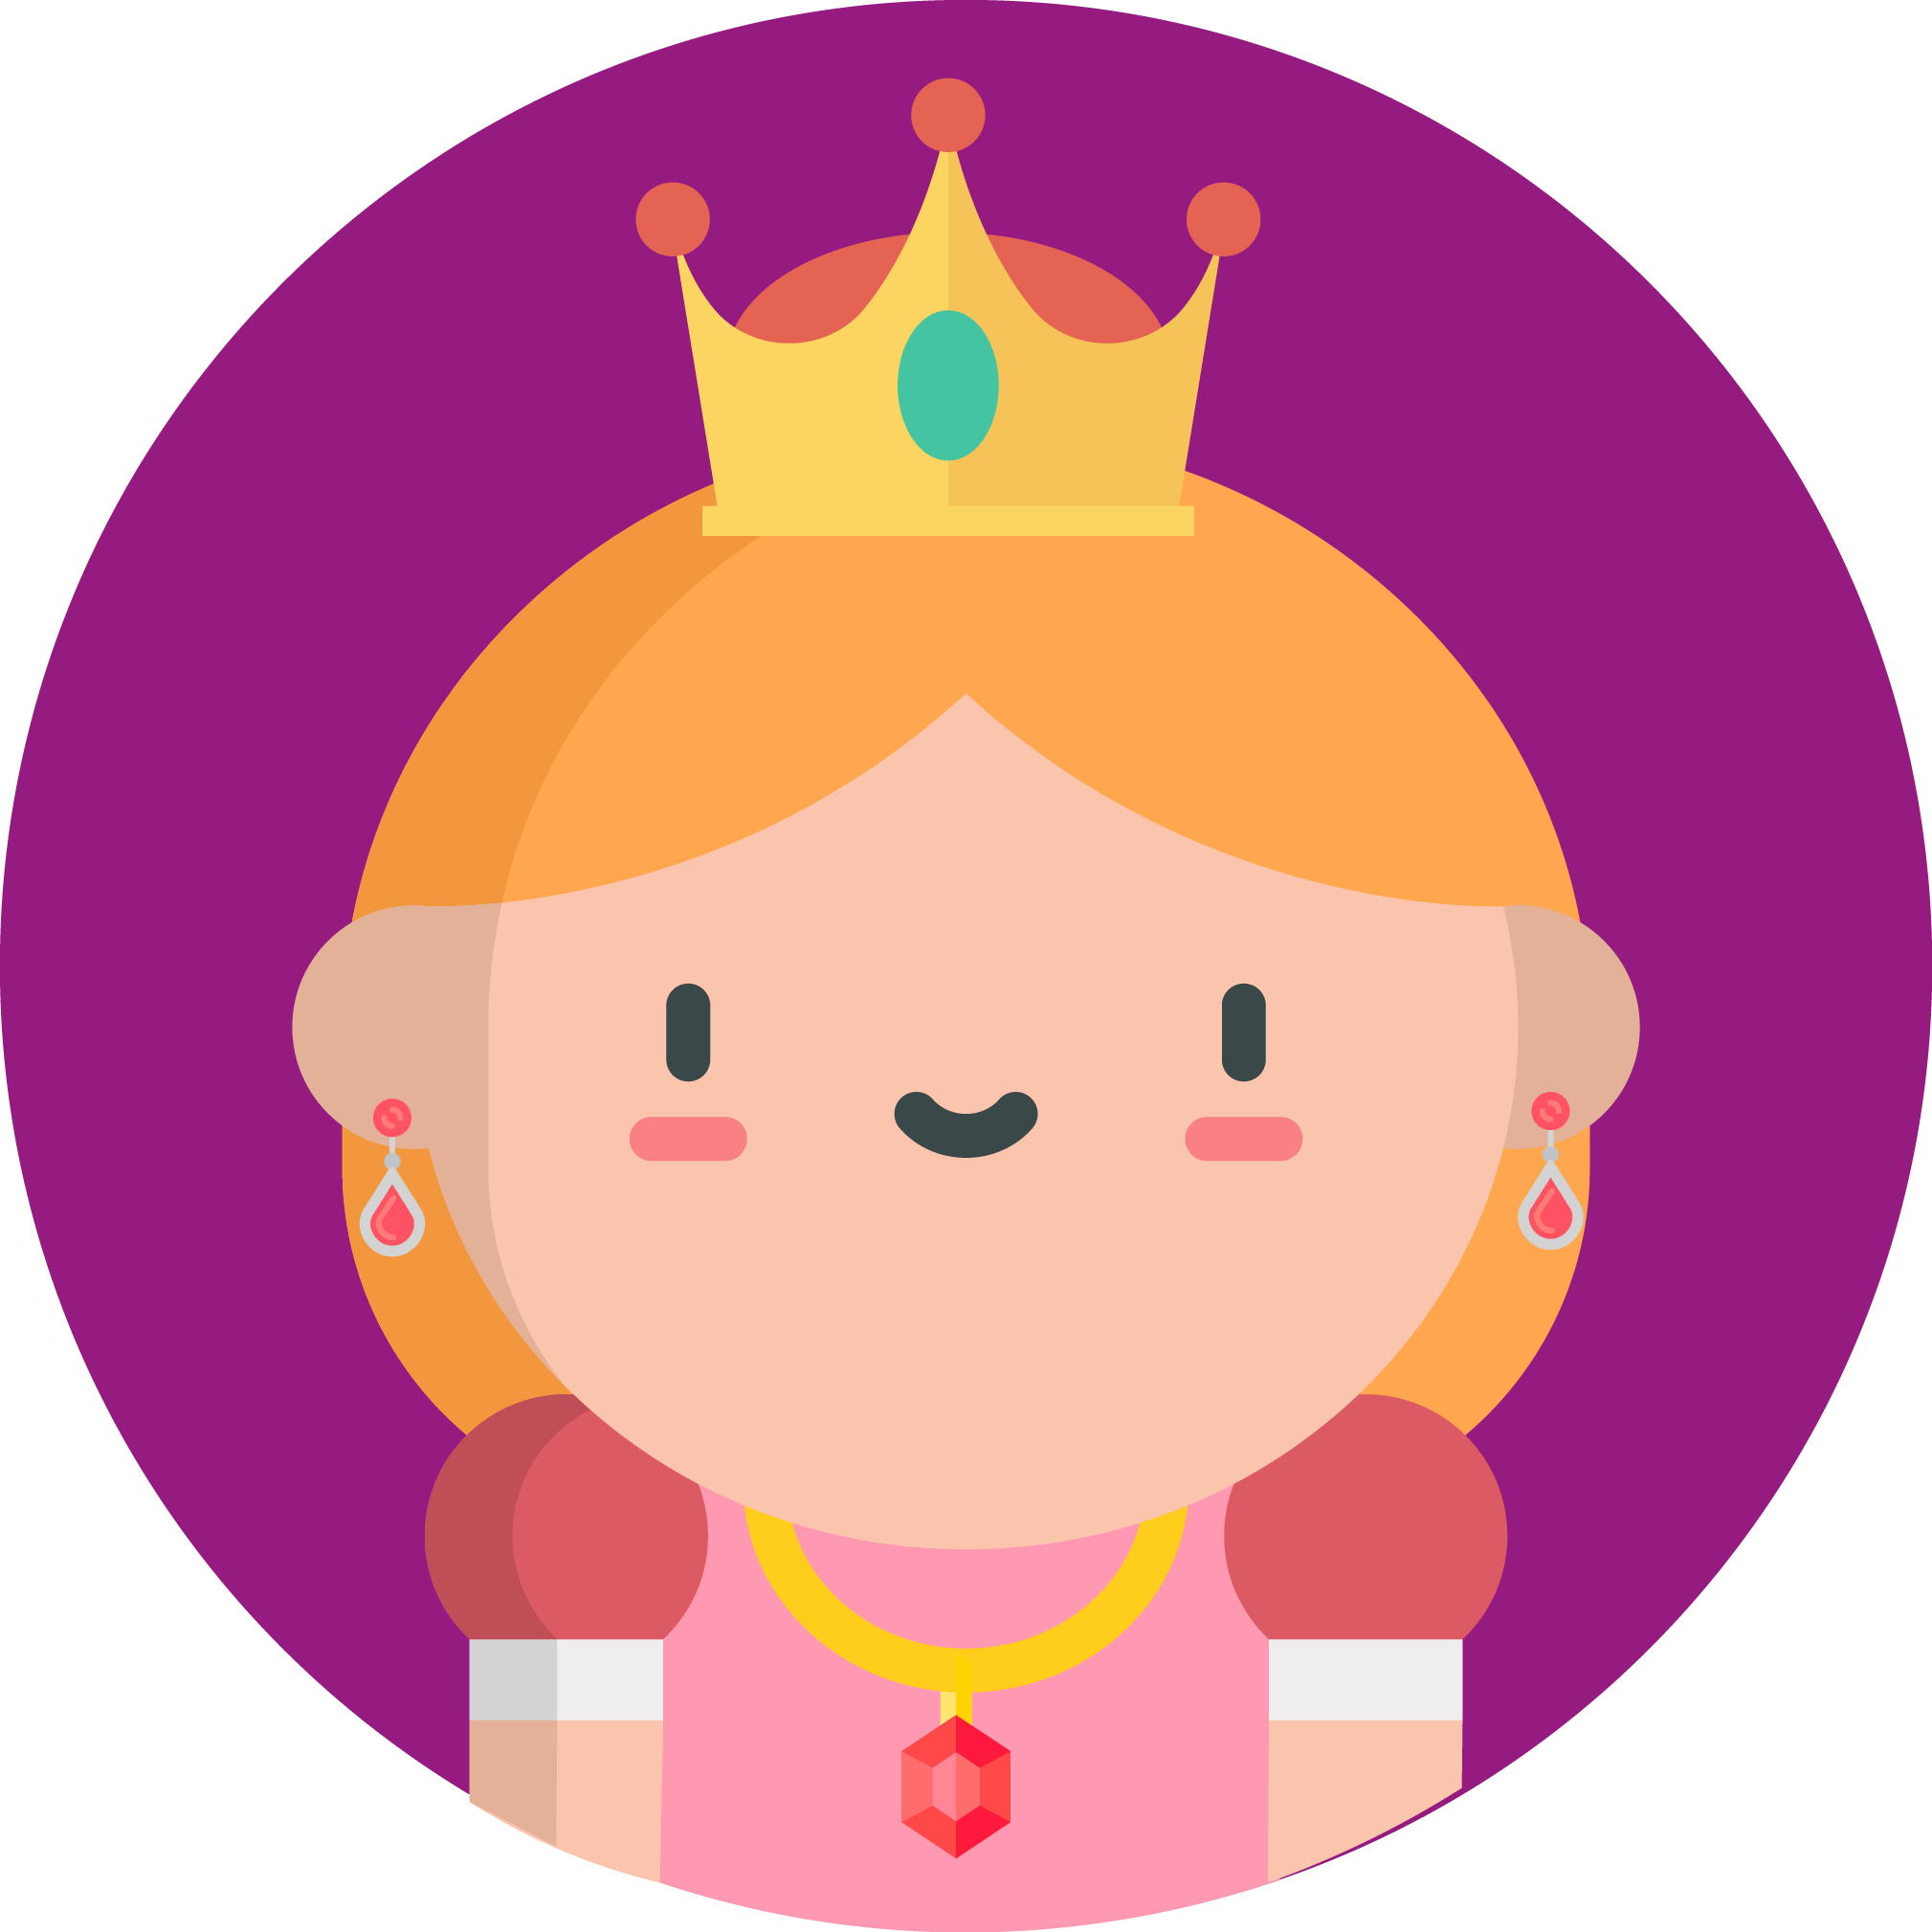 Uma ilustração de uma princesa, com uma coroa amarela na cabeça, o fundo é roxo